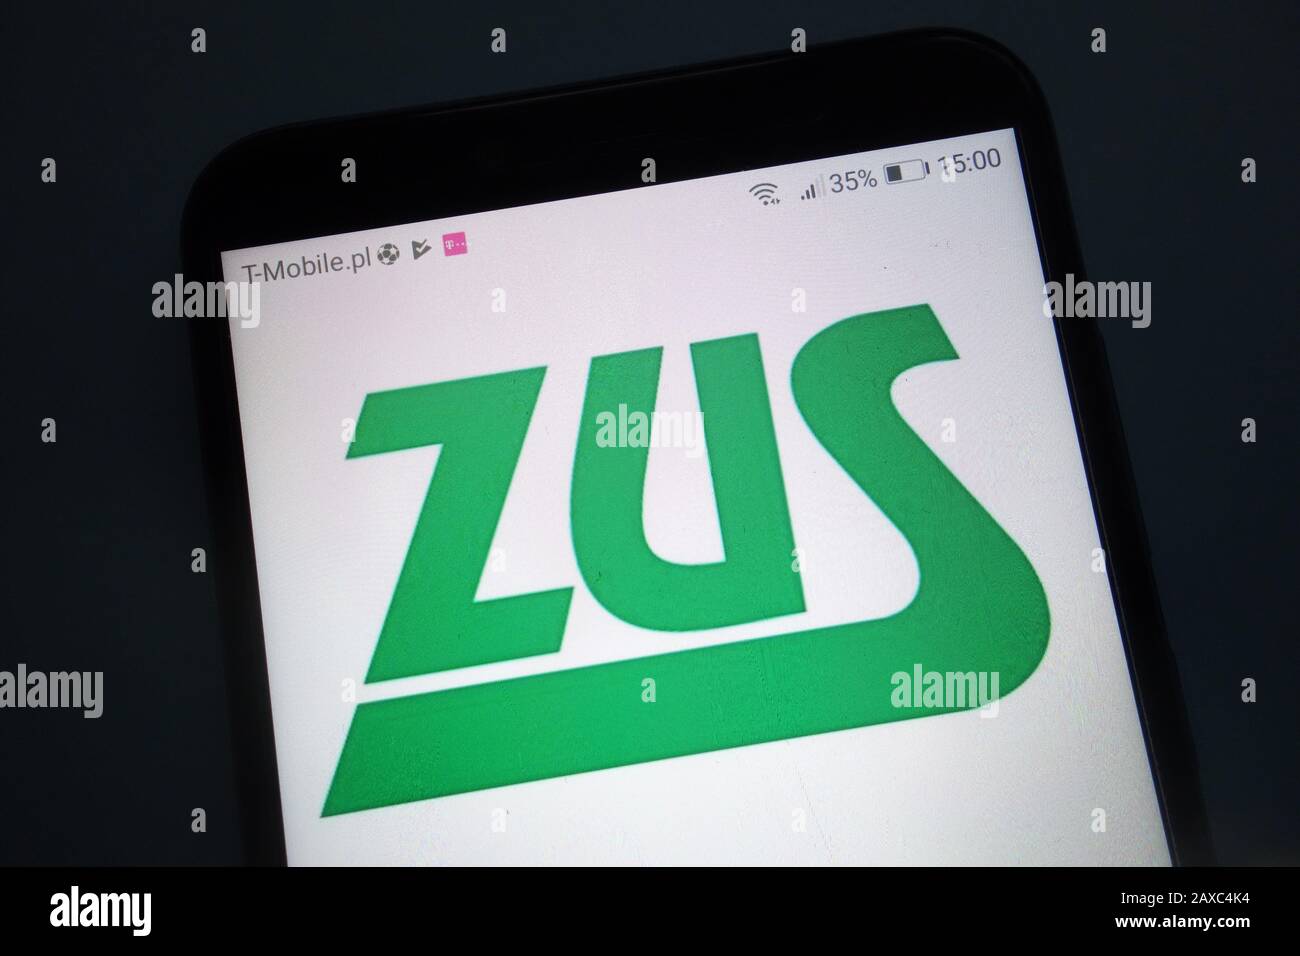 ZUS (Polish: Zaklad Ubezpieczen Spolecznych) logo on smartphone Stock Photo